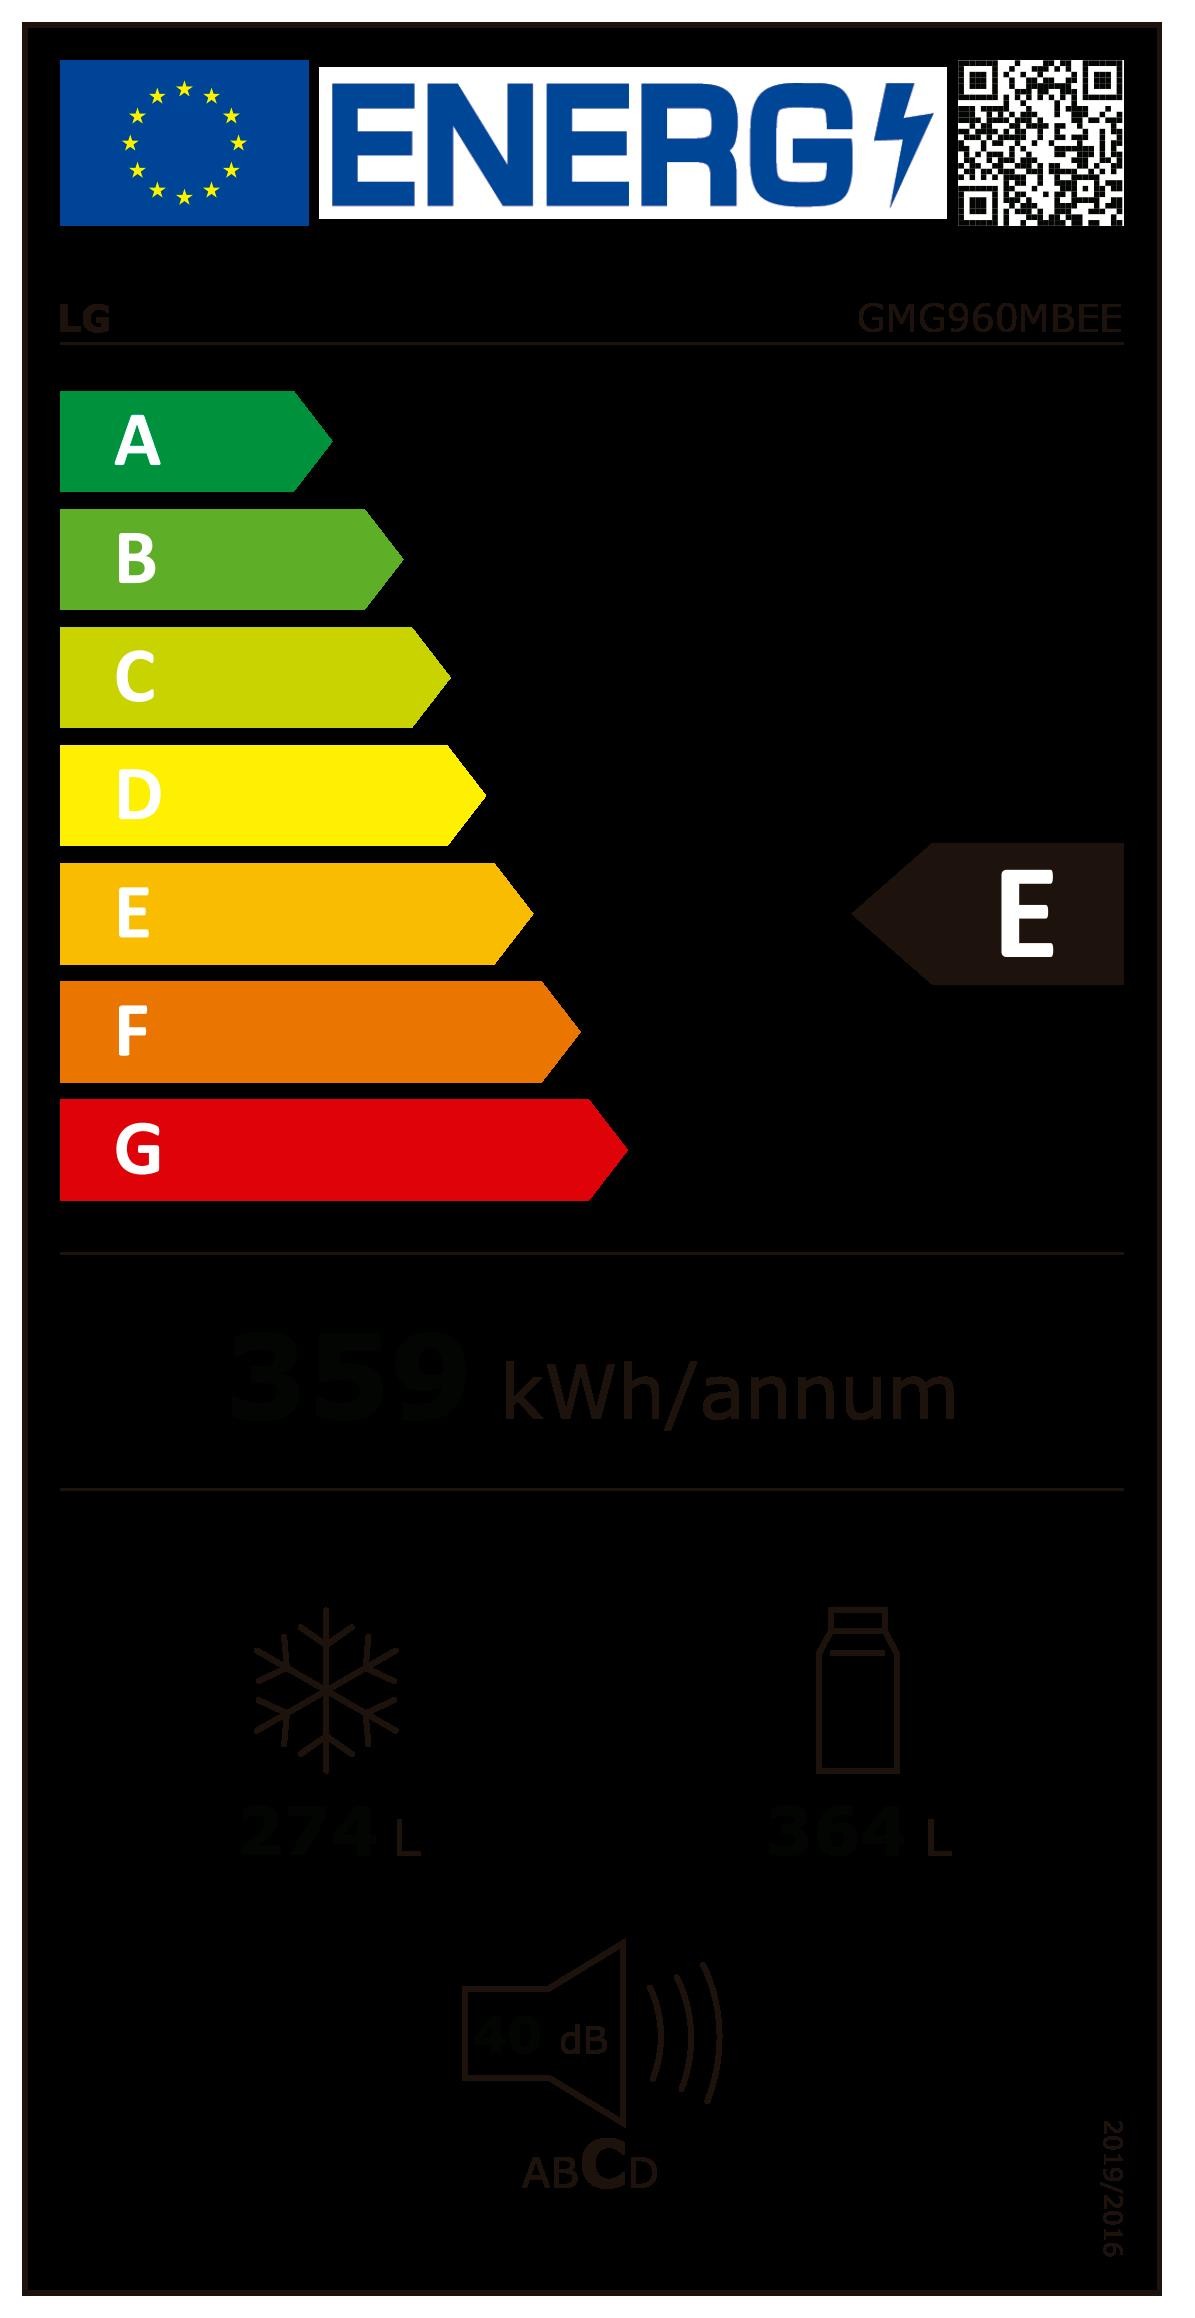 Etiqueta de Eficiencia Energética - GMG960MBEE